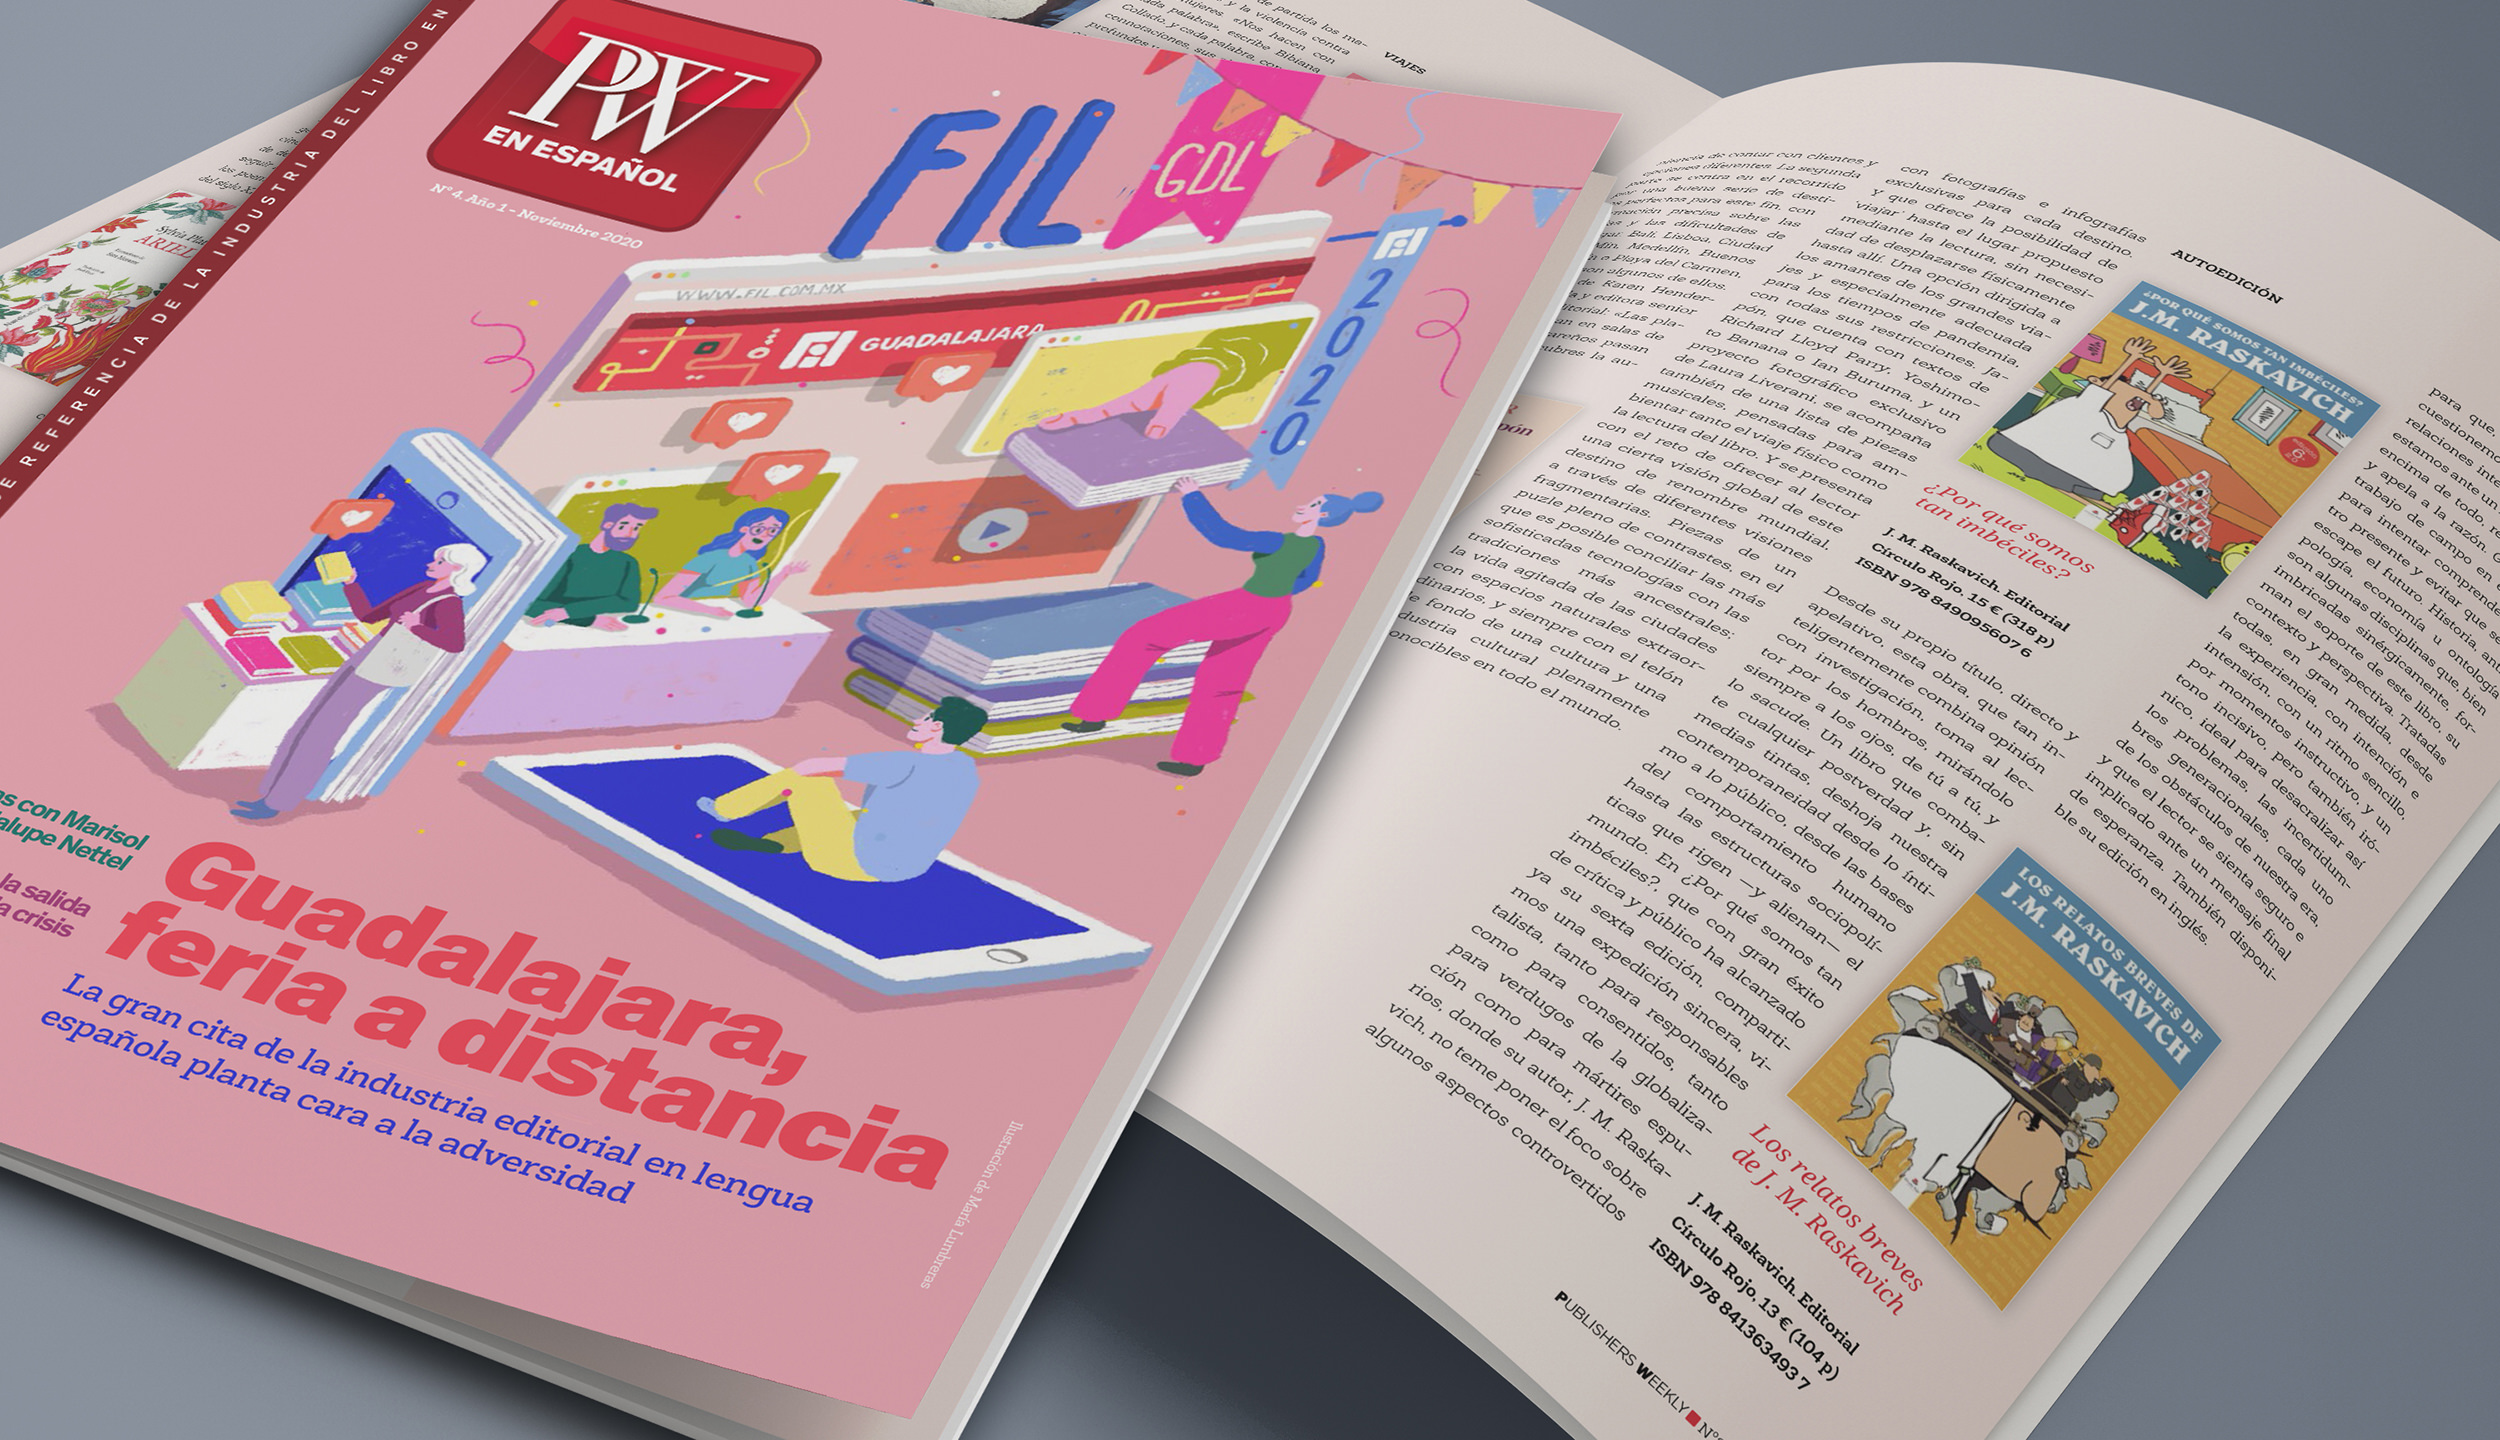 Foto de la Revista Publishers Weekly en Español, donde aparecen las reseñas de los libros de J.M. Raskavich